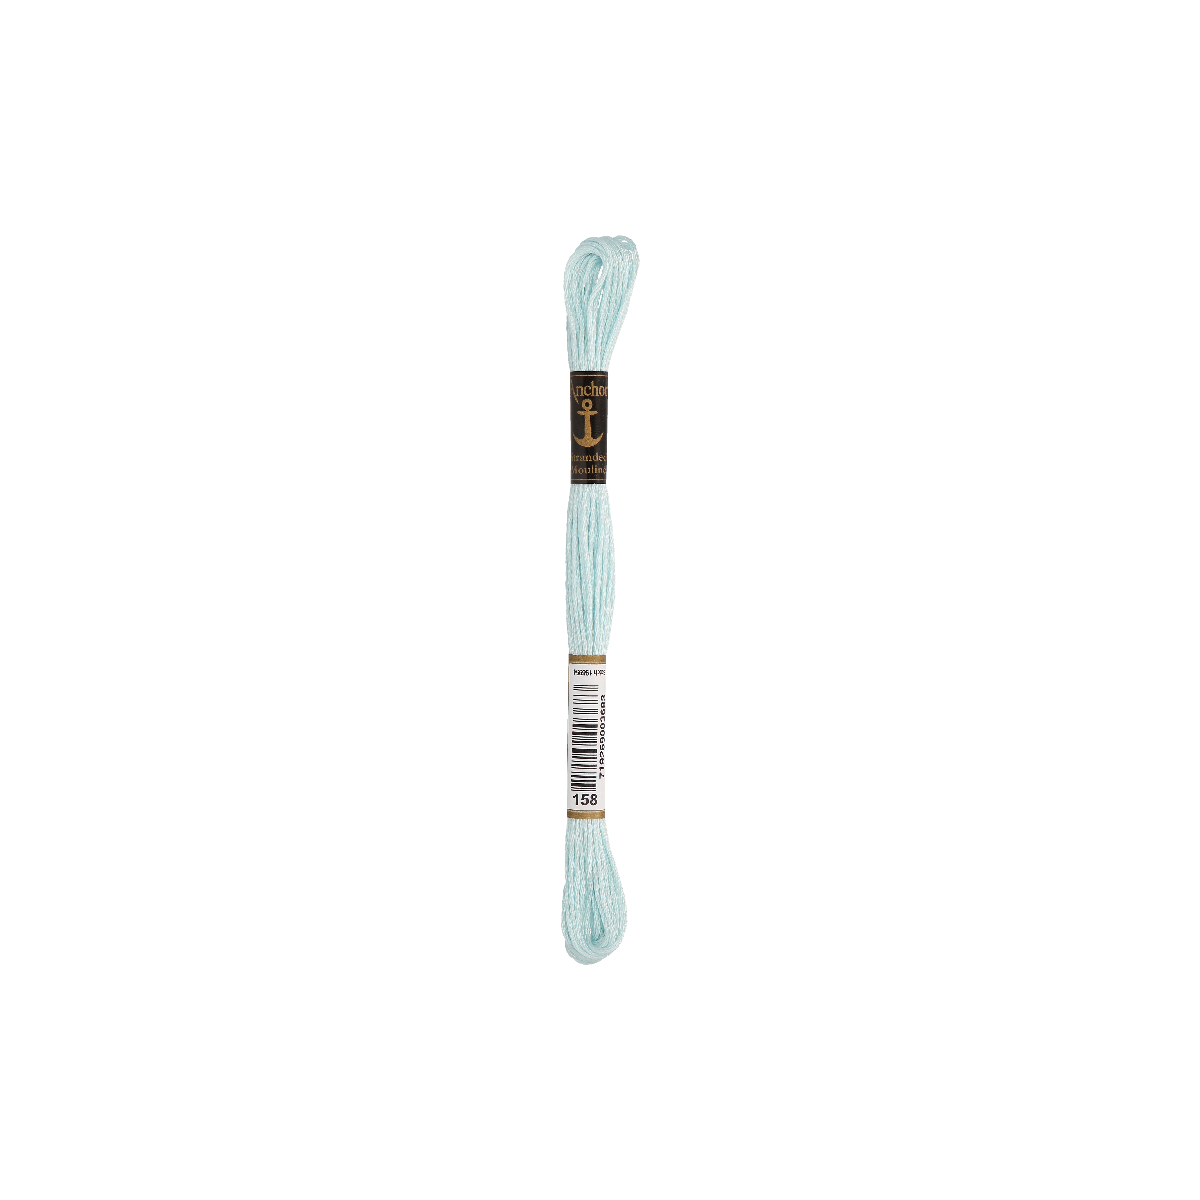 Anchor Sticktwist 8m, blu acqua, cotone, colore 158, 6 fili